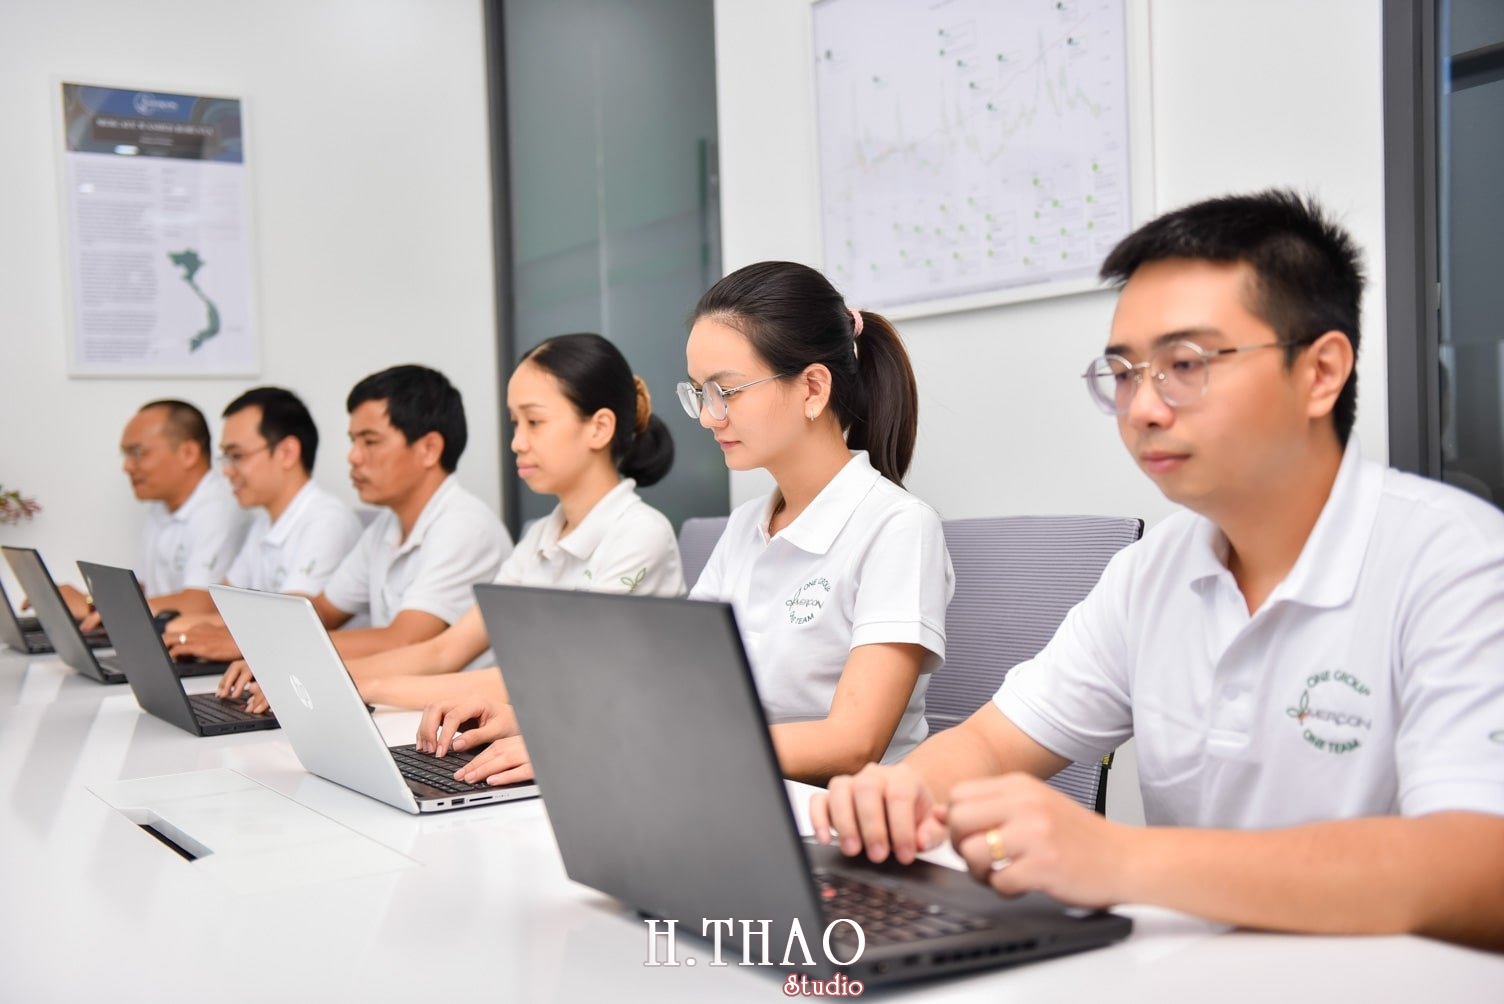 anh cong ty 7 min - Dịch vụ chụp ảnh văn phòng công ty chuyên nghiệp tại Tp.HCM – HThao Studio